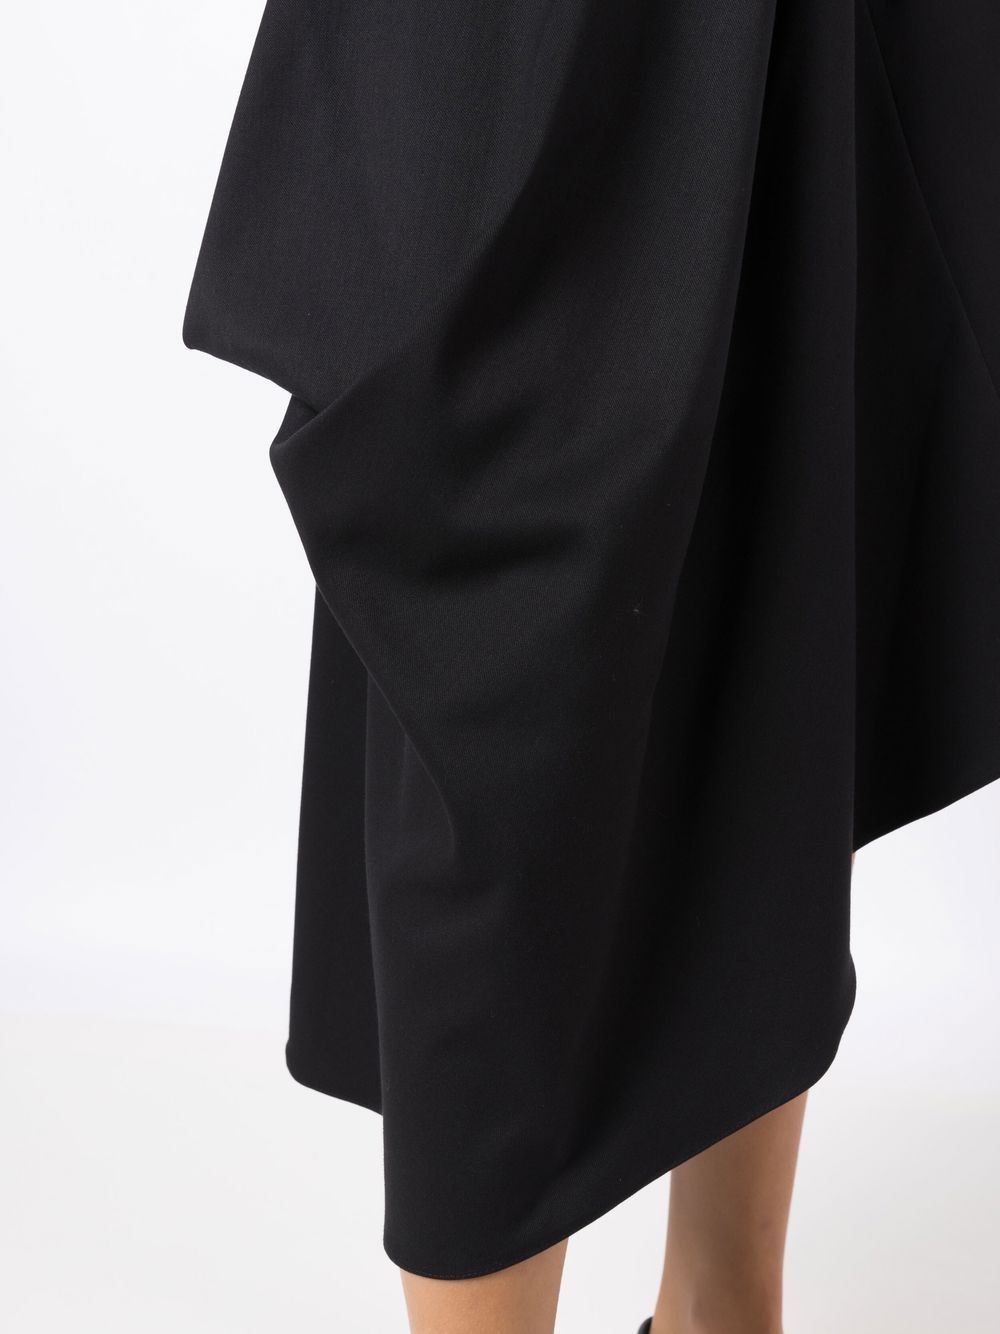 Uma | Raquel Davidowicz Asymmetric Draped Midi Skirt - Farfetch